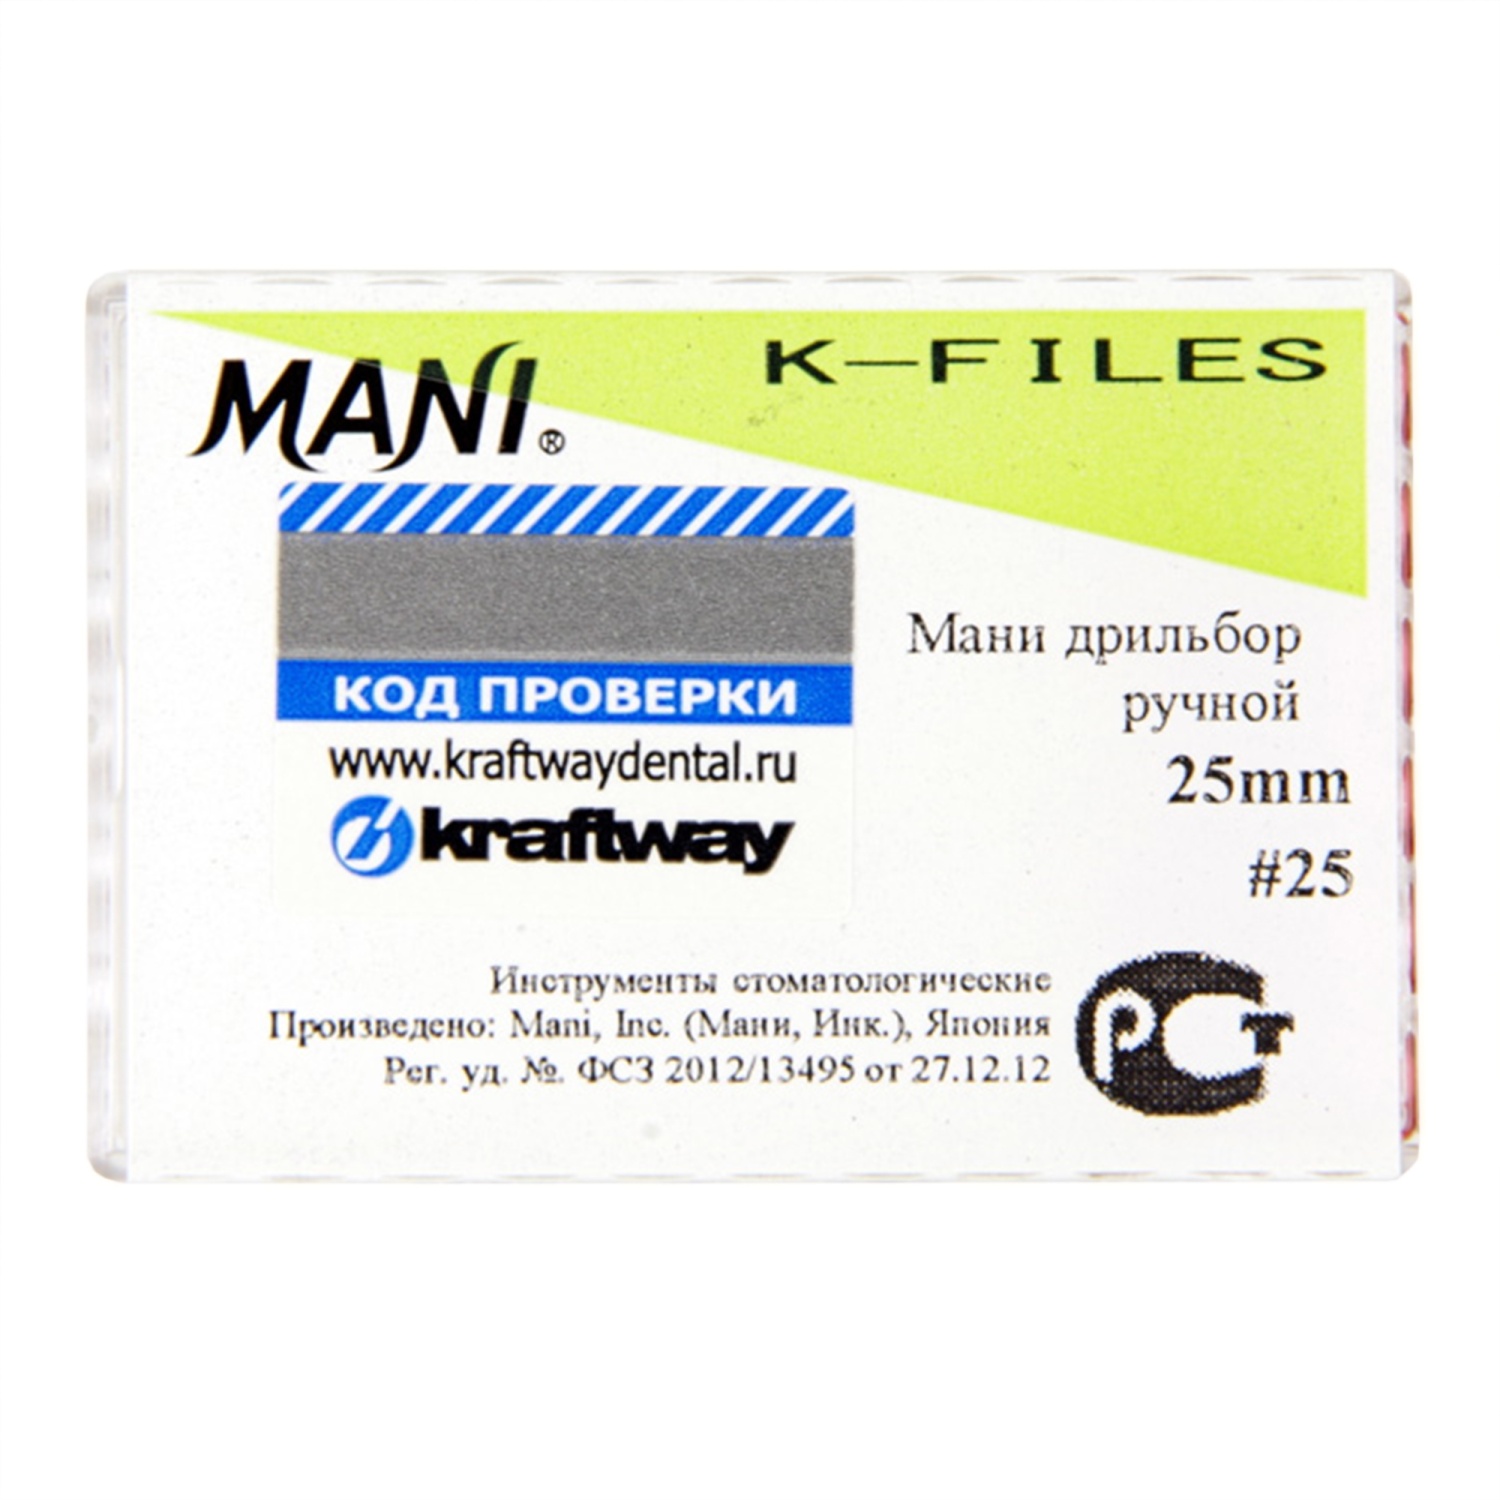 К-файлы 25 мм № 25 - эндодонтические файлы (6 шт), "Mani"